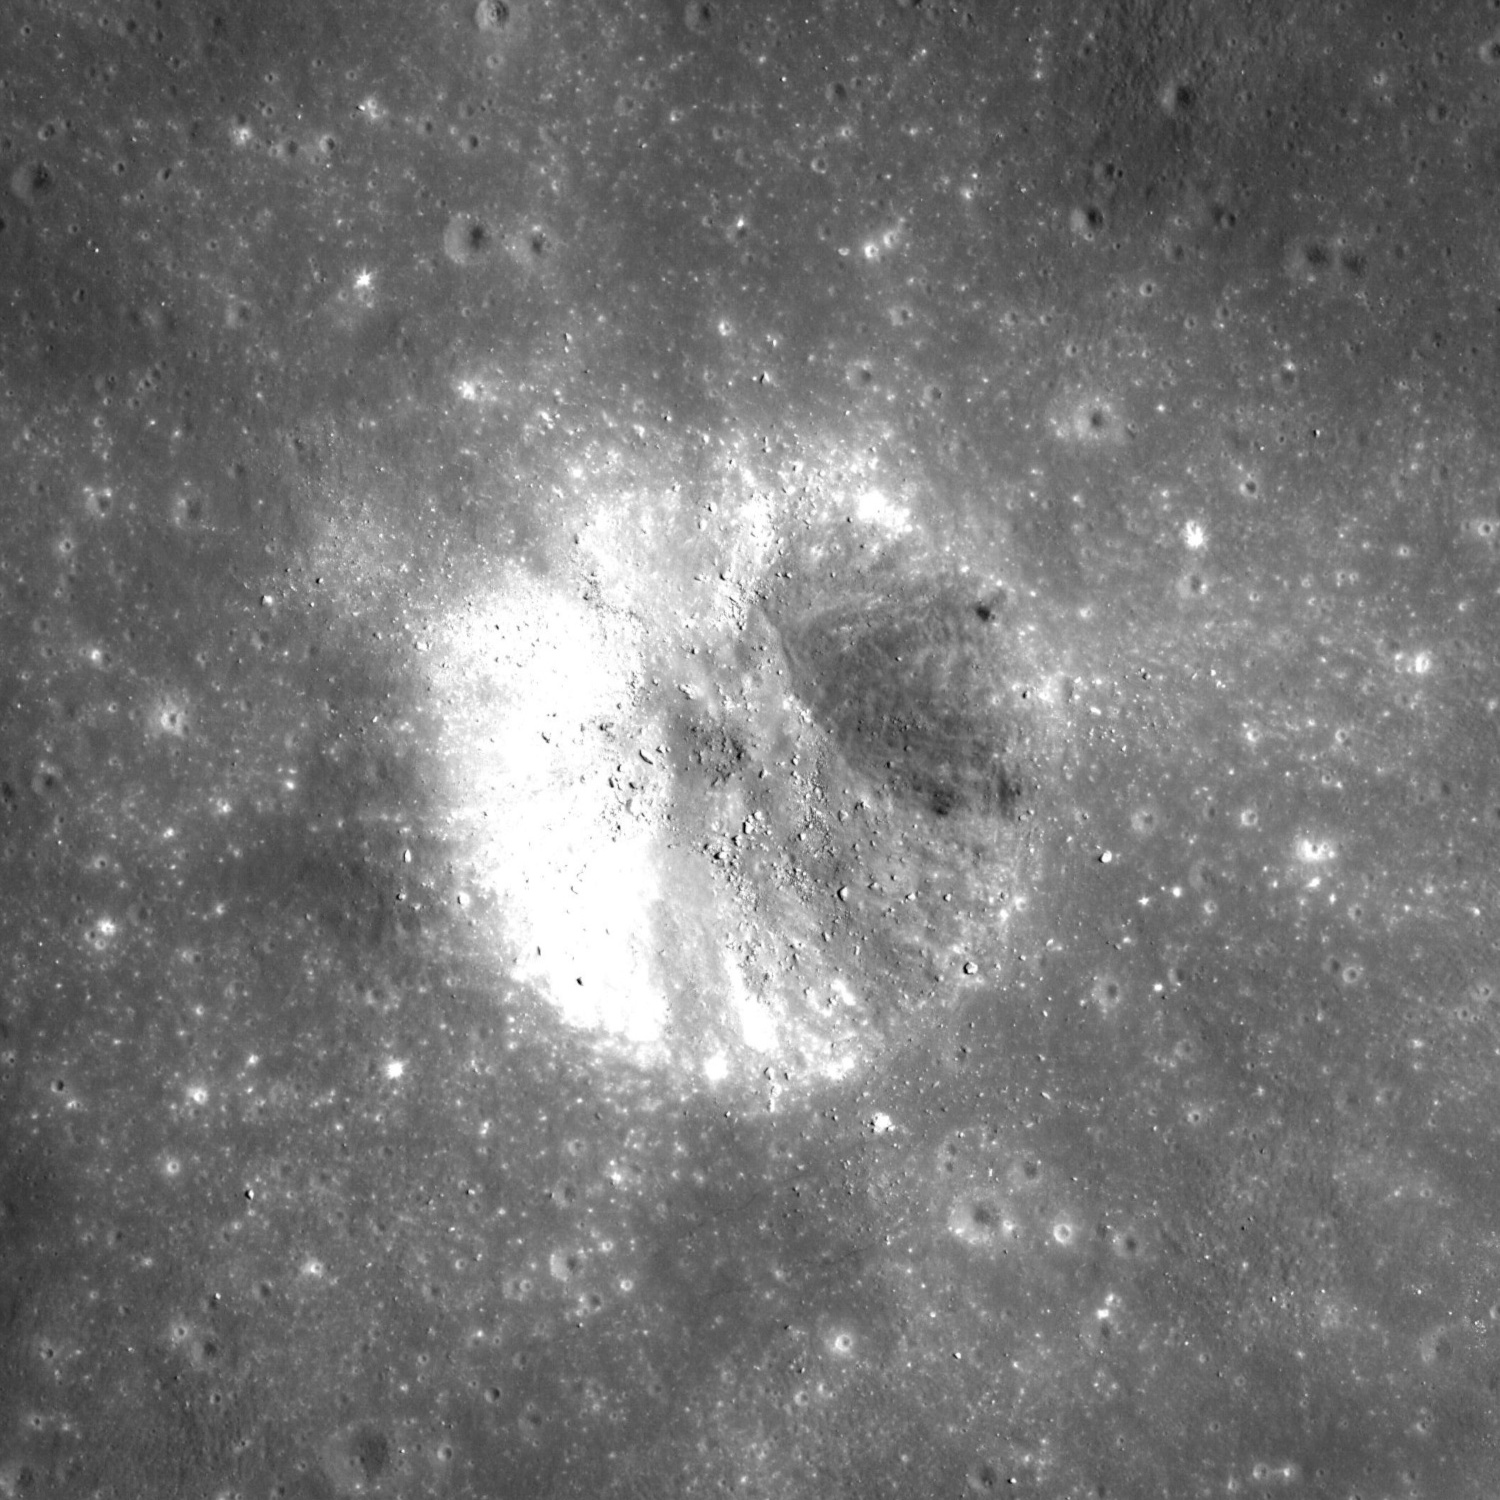 Fotografija Cone kratera na Mjesecu koju je snimio Apollo 14. Izvor: Wikimedia Commons.